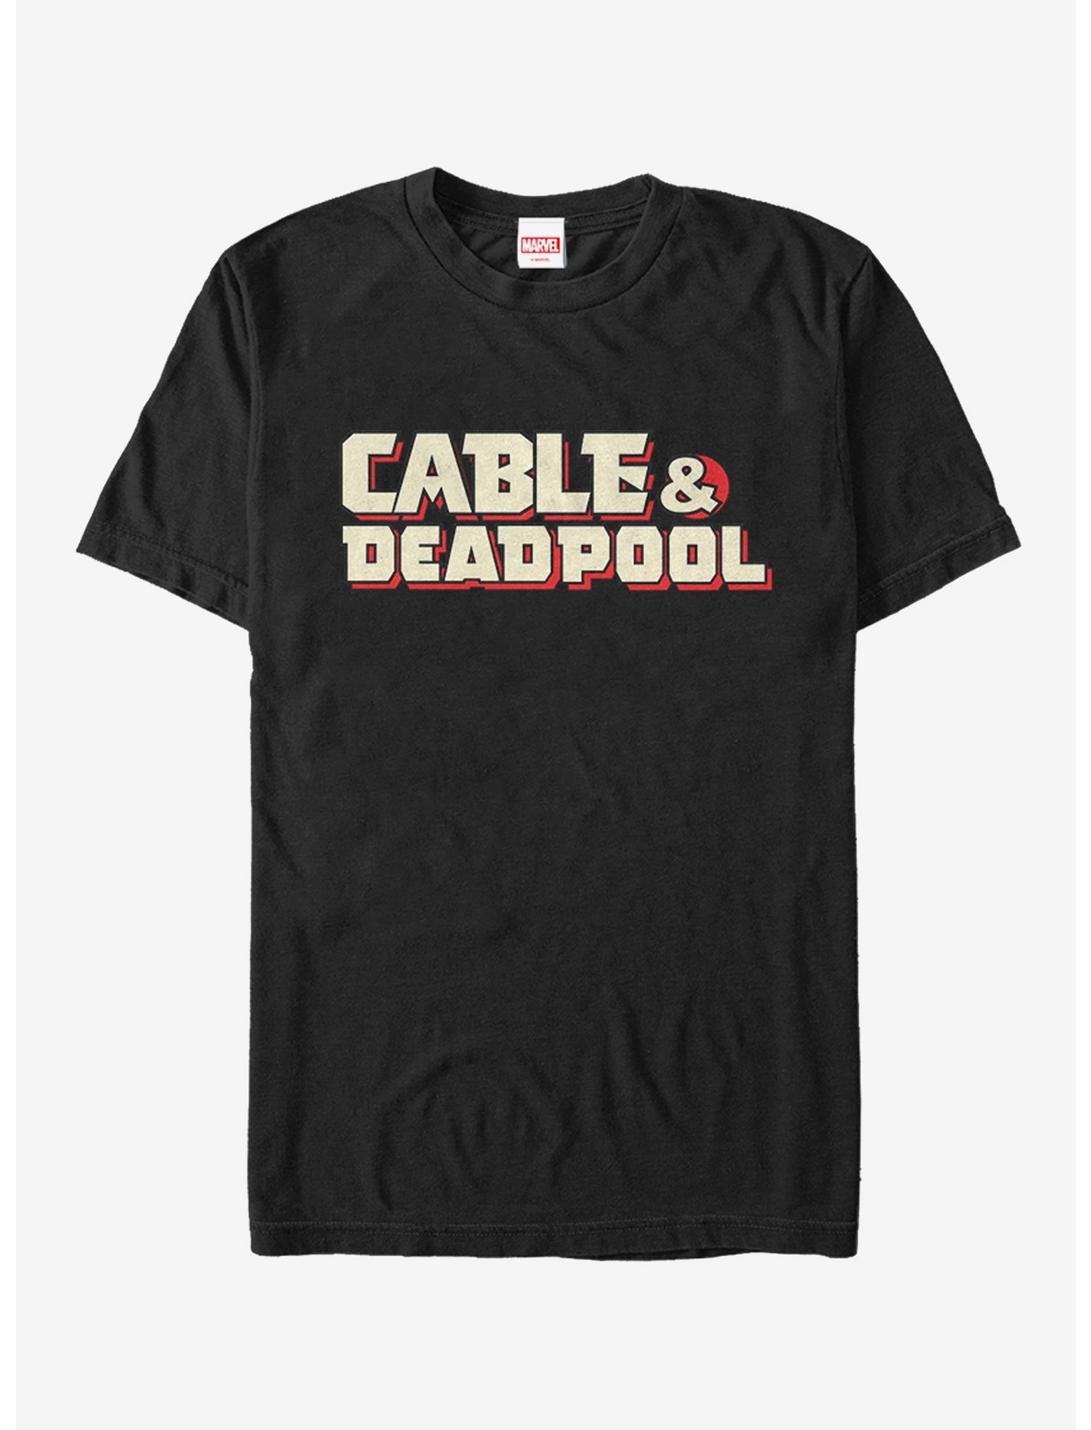 Marvel Deadpool Cable & Deadpool T-Shirt, BLACK, hi-res